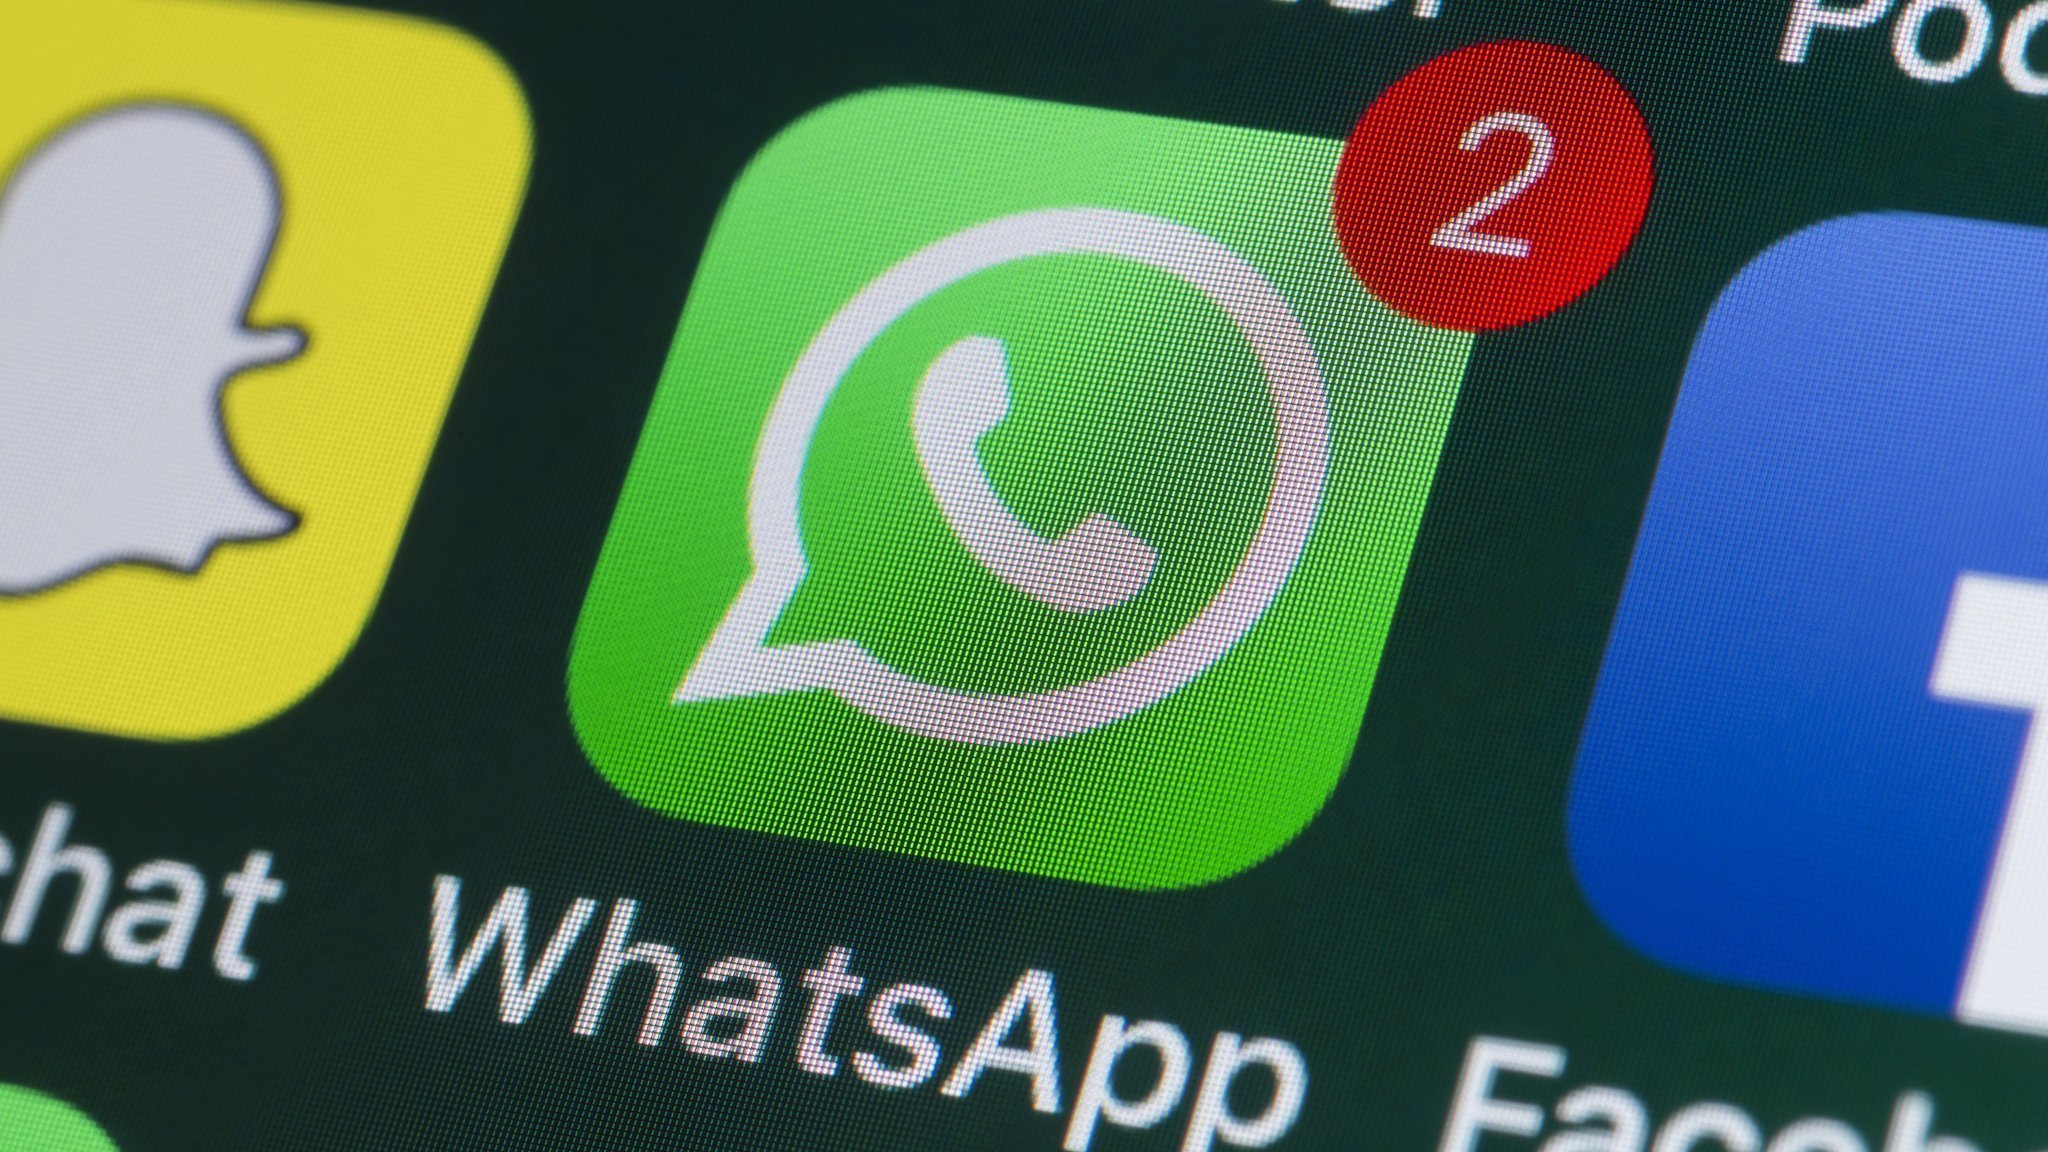 WhatsApp încearcă din nou actualizarea politicii de confidențialitate, după numeroase controverse stârnite în rândul utilizatorilor